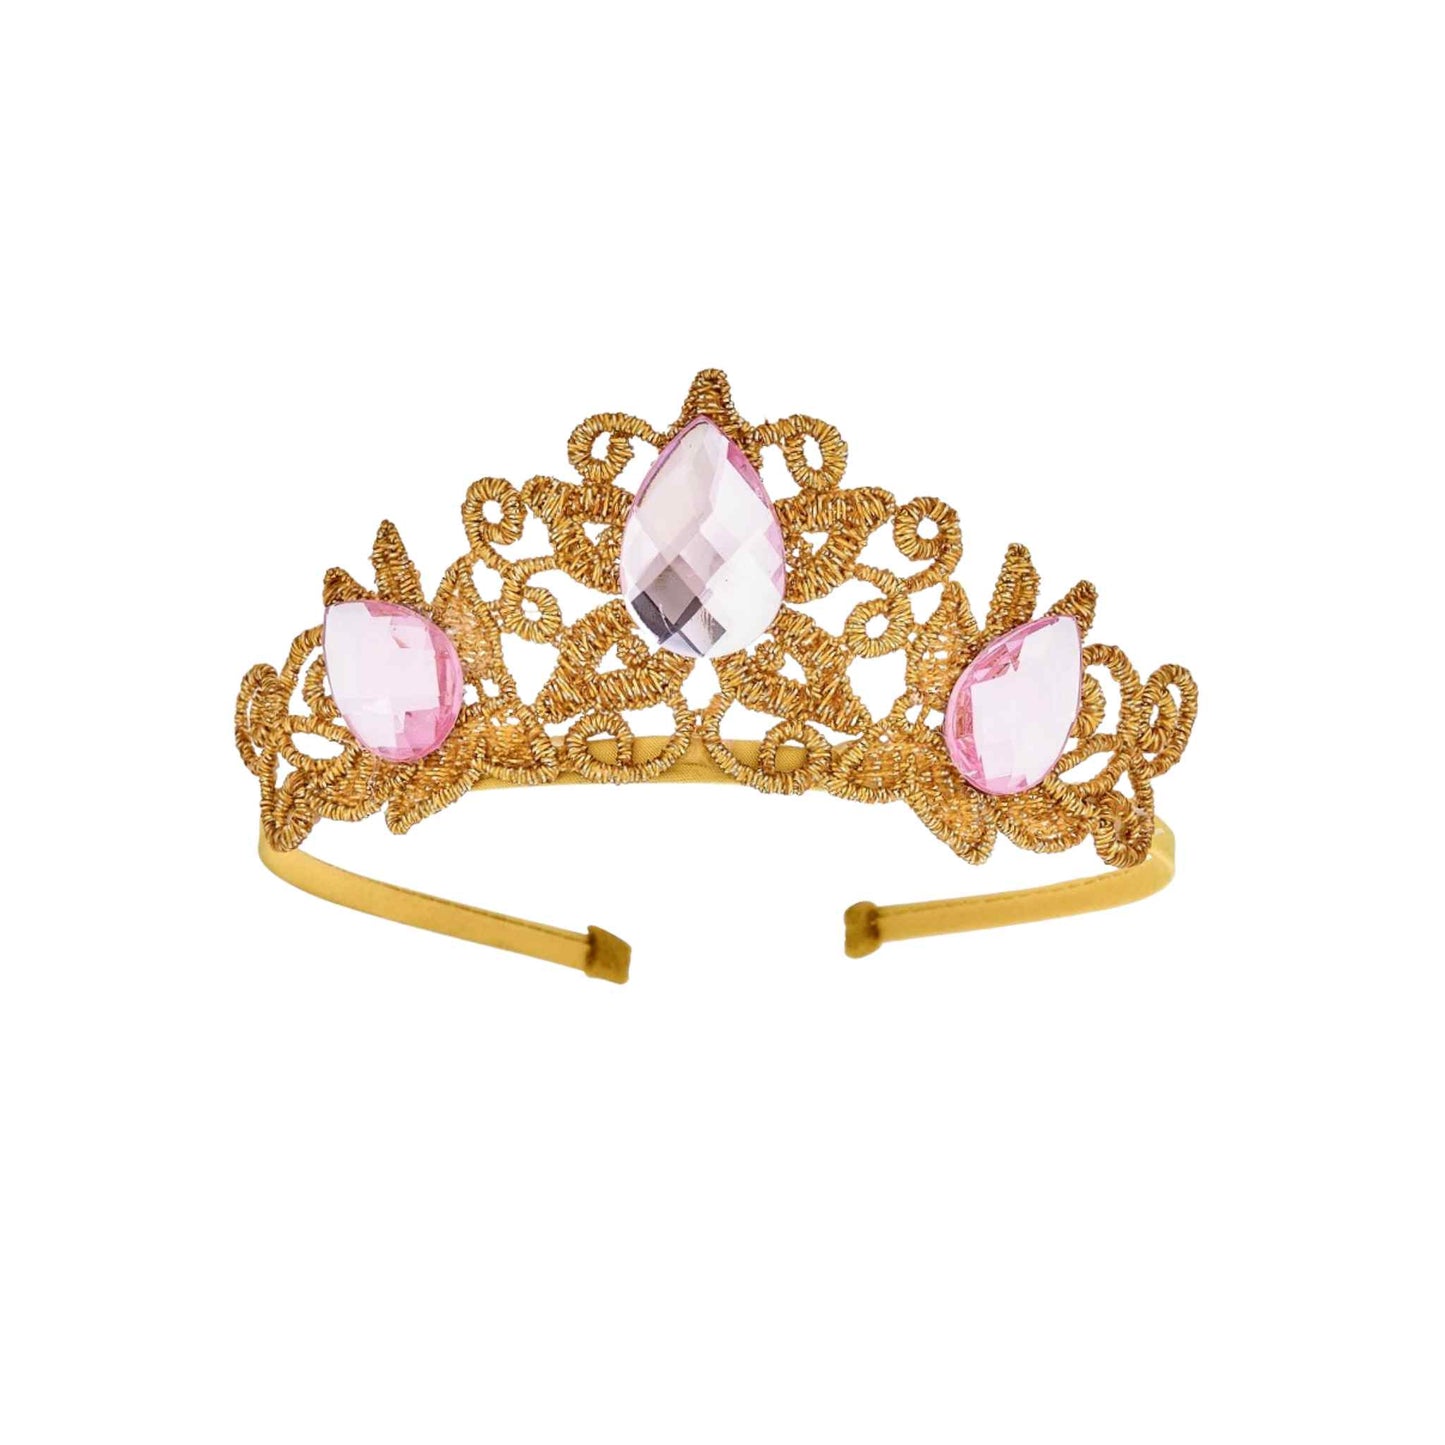 Raven Princess Crown, Pink